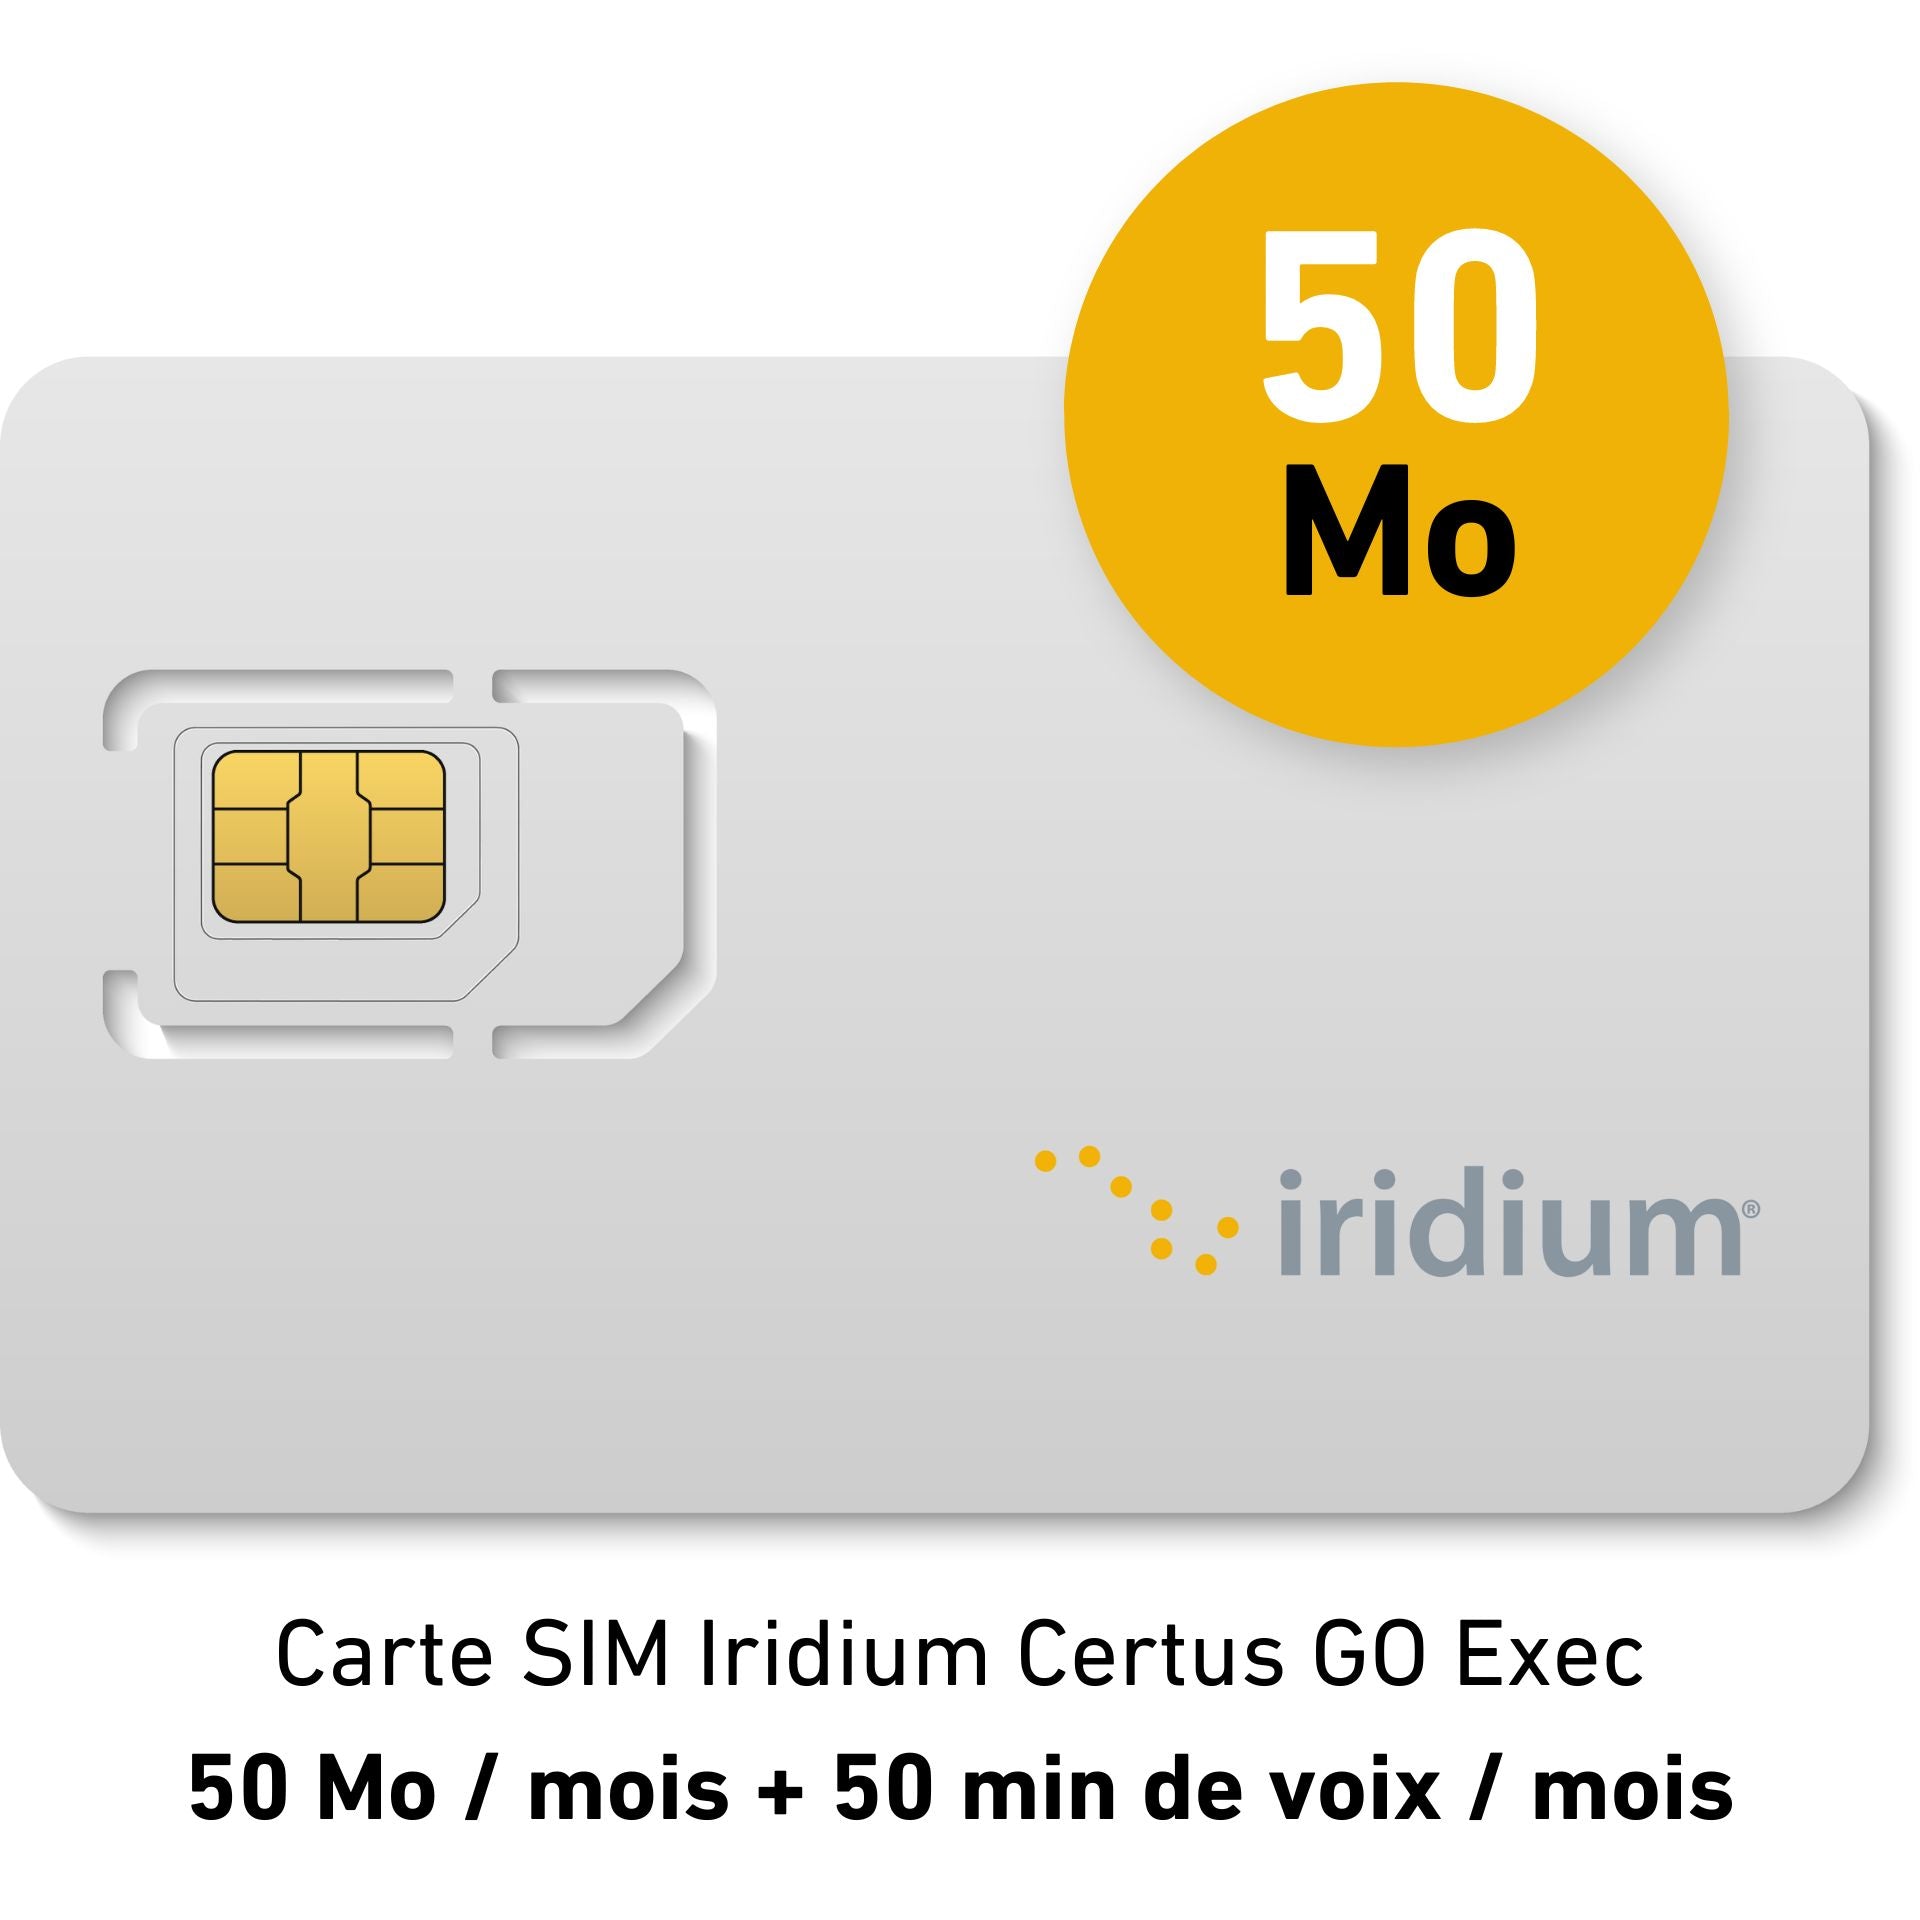 Iridium Certus GO Exec Suscripción Mensual Placer - 50MB/mes - datos duplicados + 50 mins voz